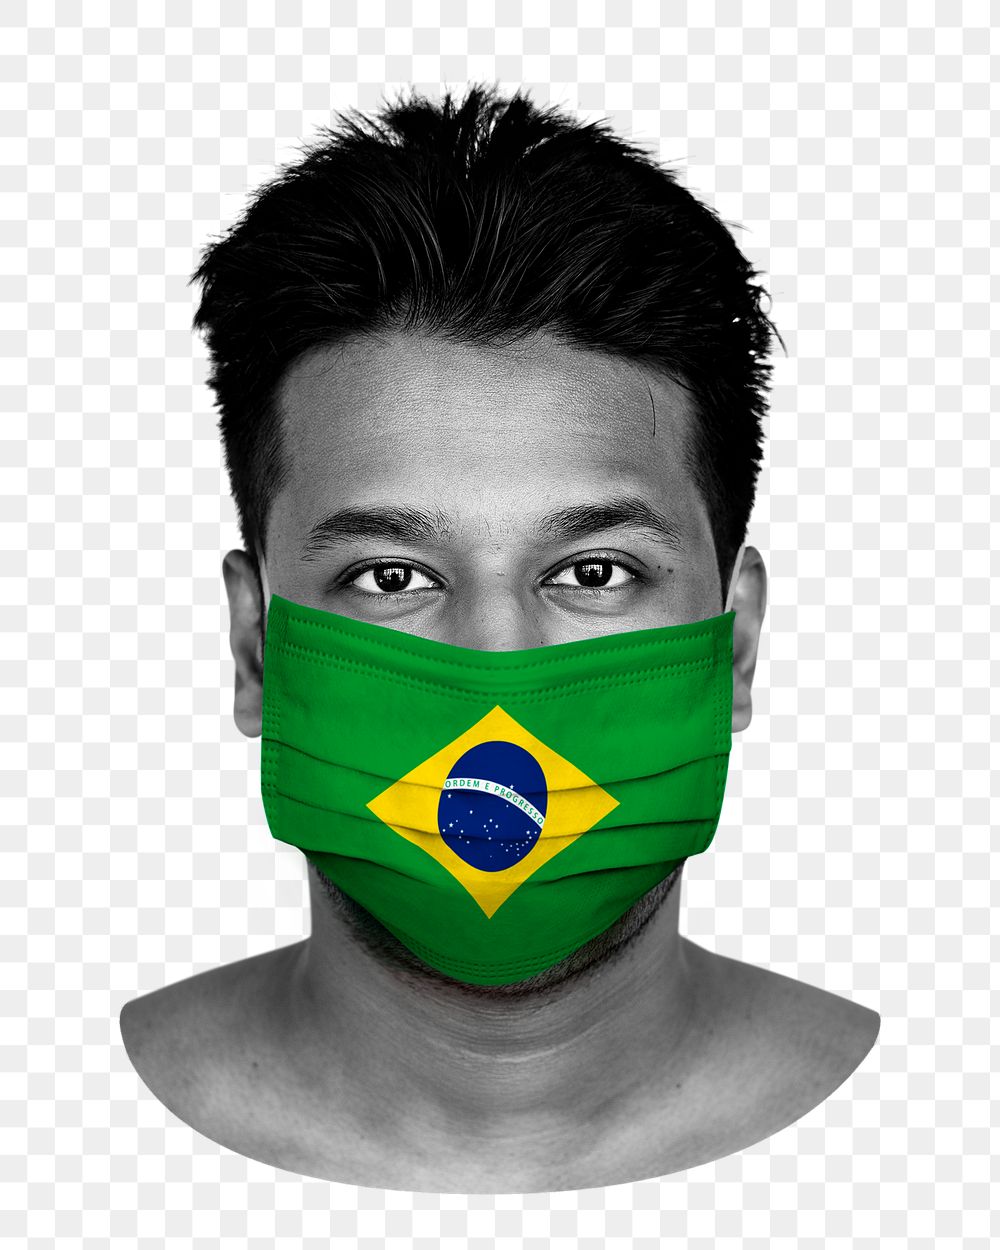 Brazilian flag png face mask, transparent background